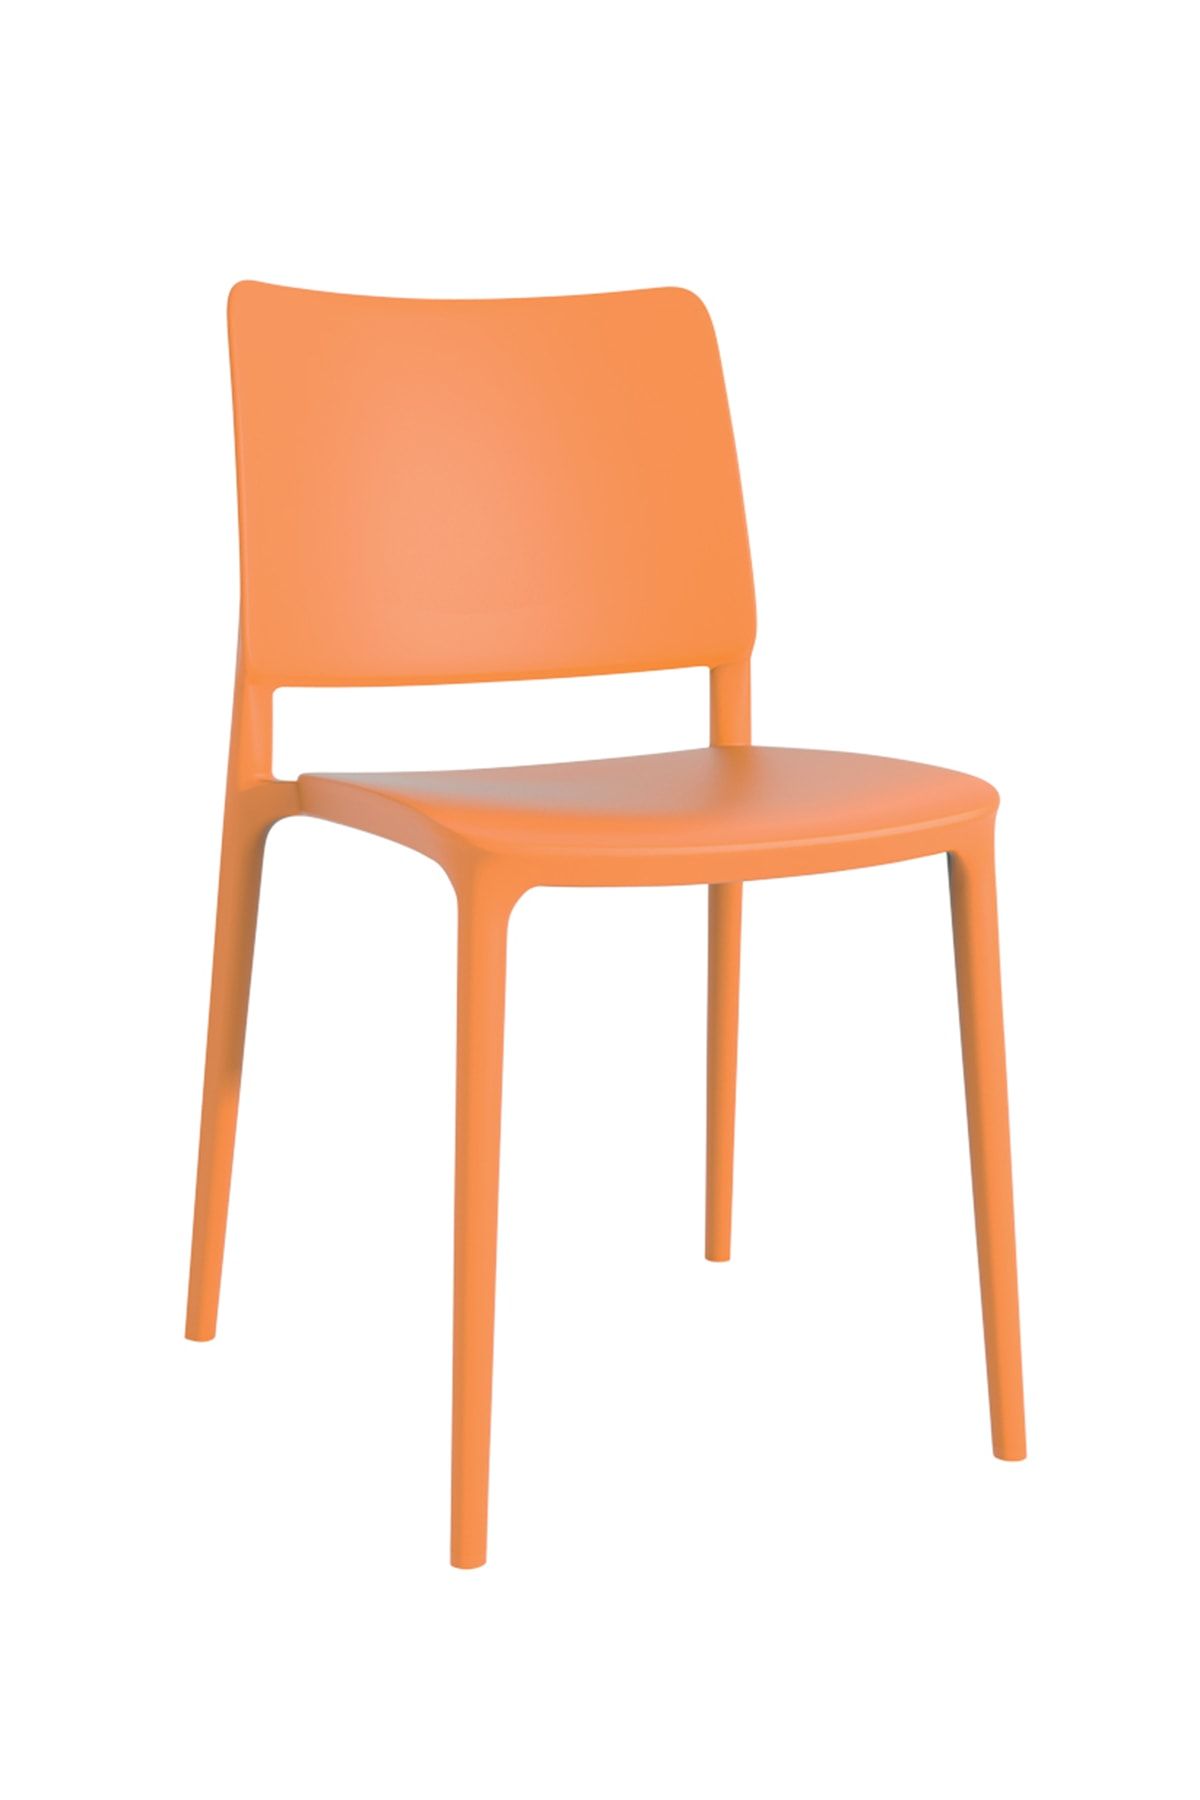 Papatya Joy Sandalye Turuncu - Mutfak Sandalyesi - Kolçaksız